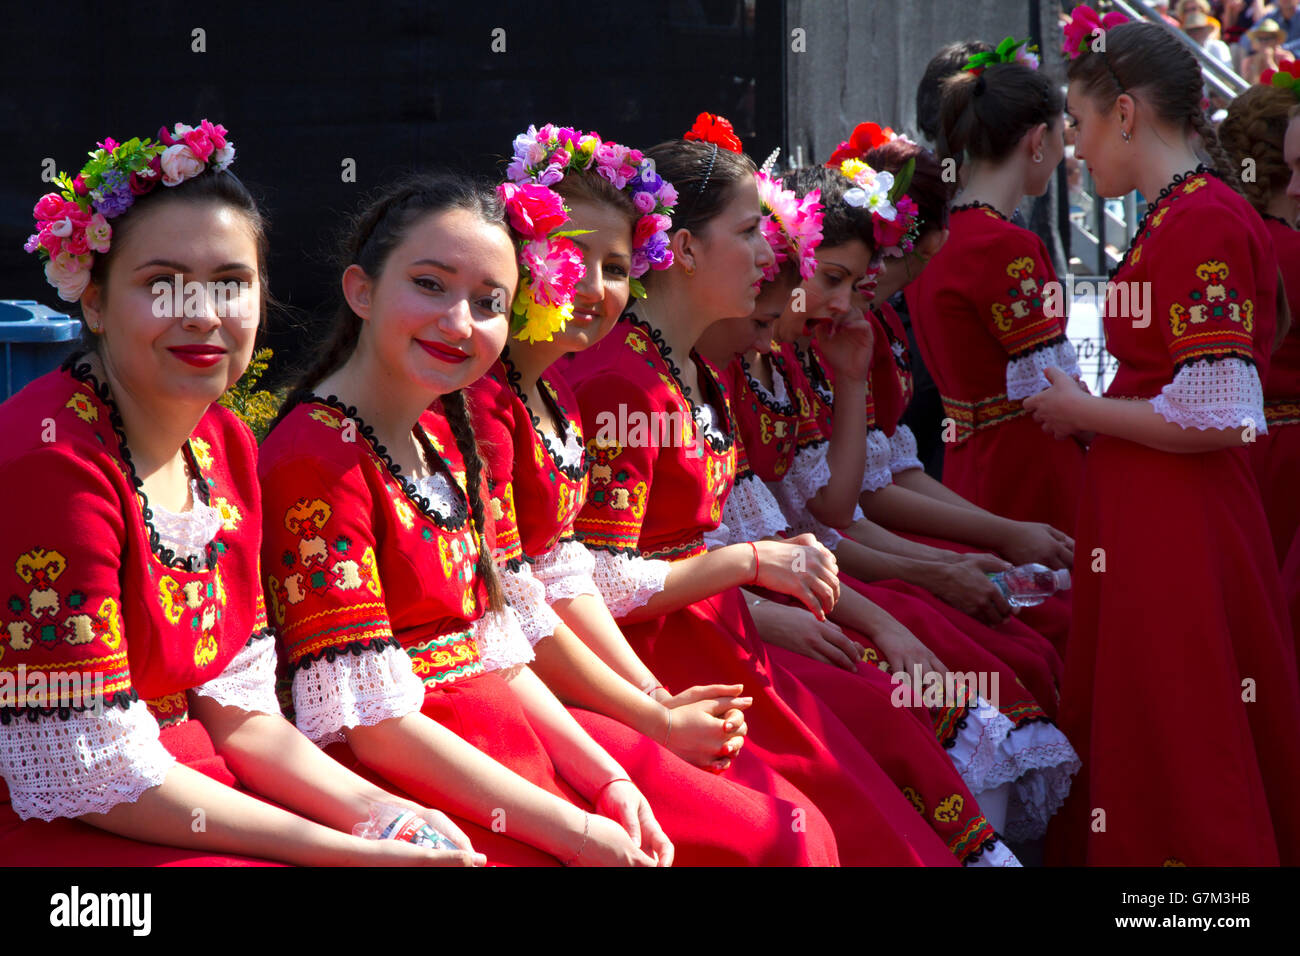 Mitglieder der weiblichen akademischen Folk Chor Bulgarien nehmen die Bühne in eine internationale Jugend-Musikfestival in Basel. Stockfoto